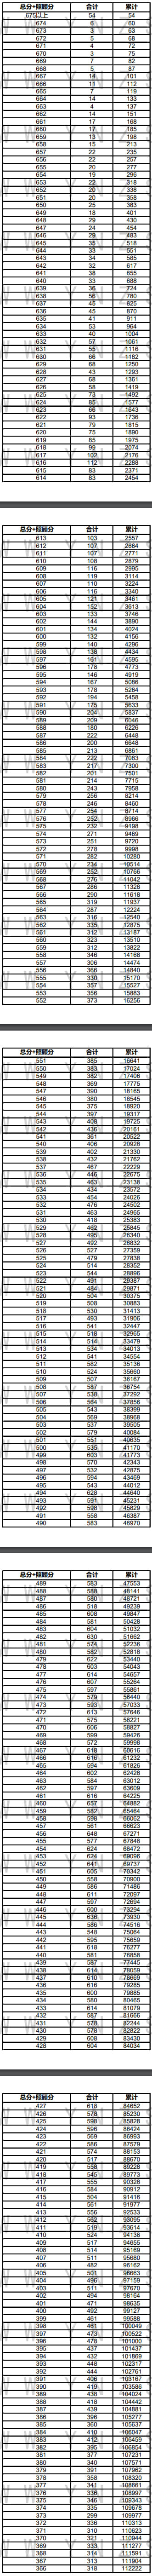 2021云南高考一分一段表及位次排名（理科-文科）